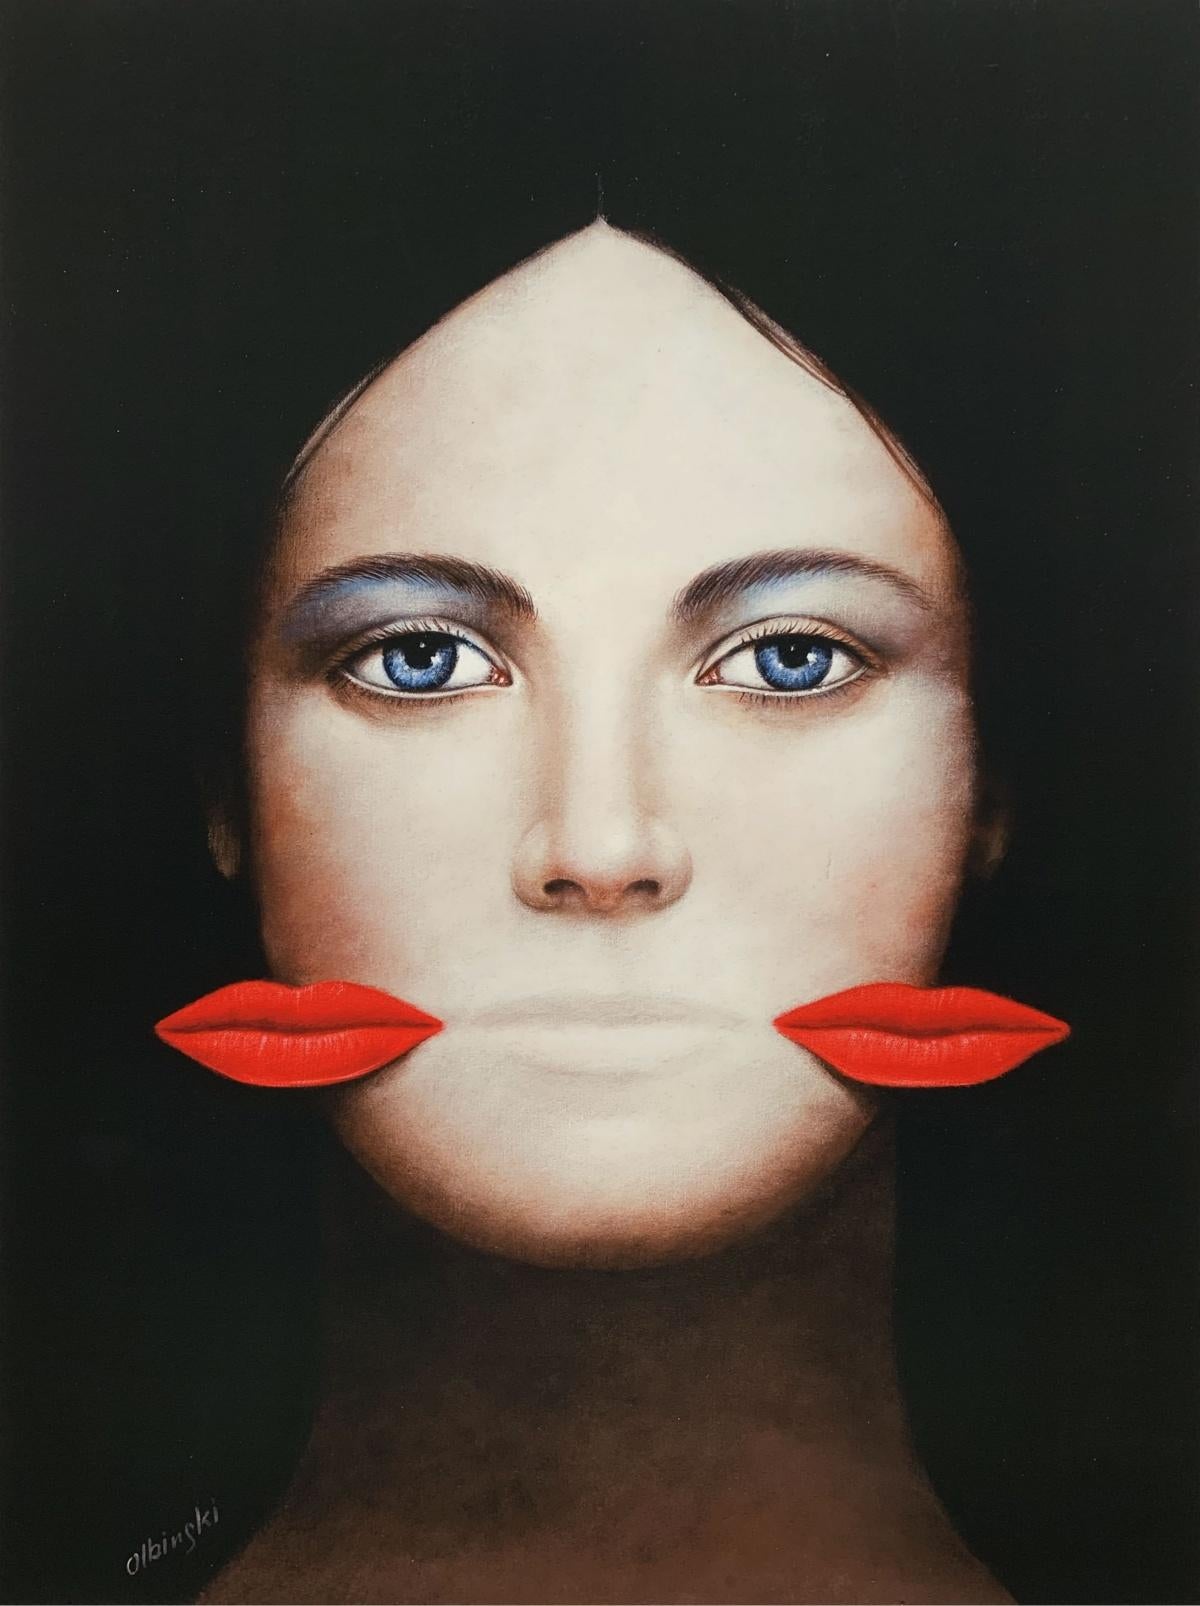 Rafał Olbiński Portrait Print - Lips - XXI Century, Contemporary Figurative Surrealist Print